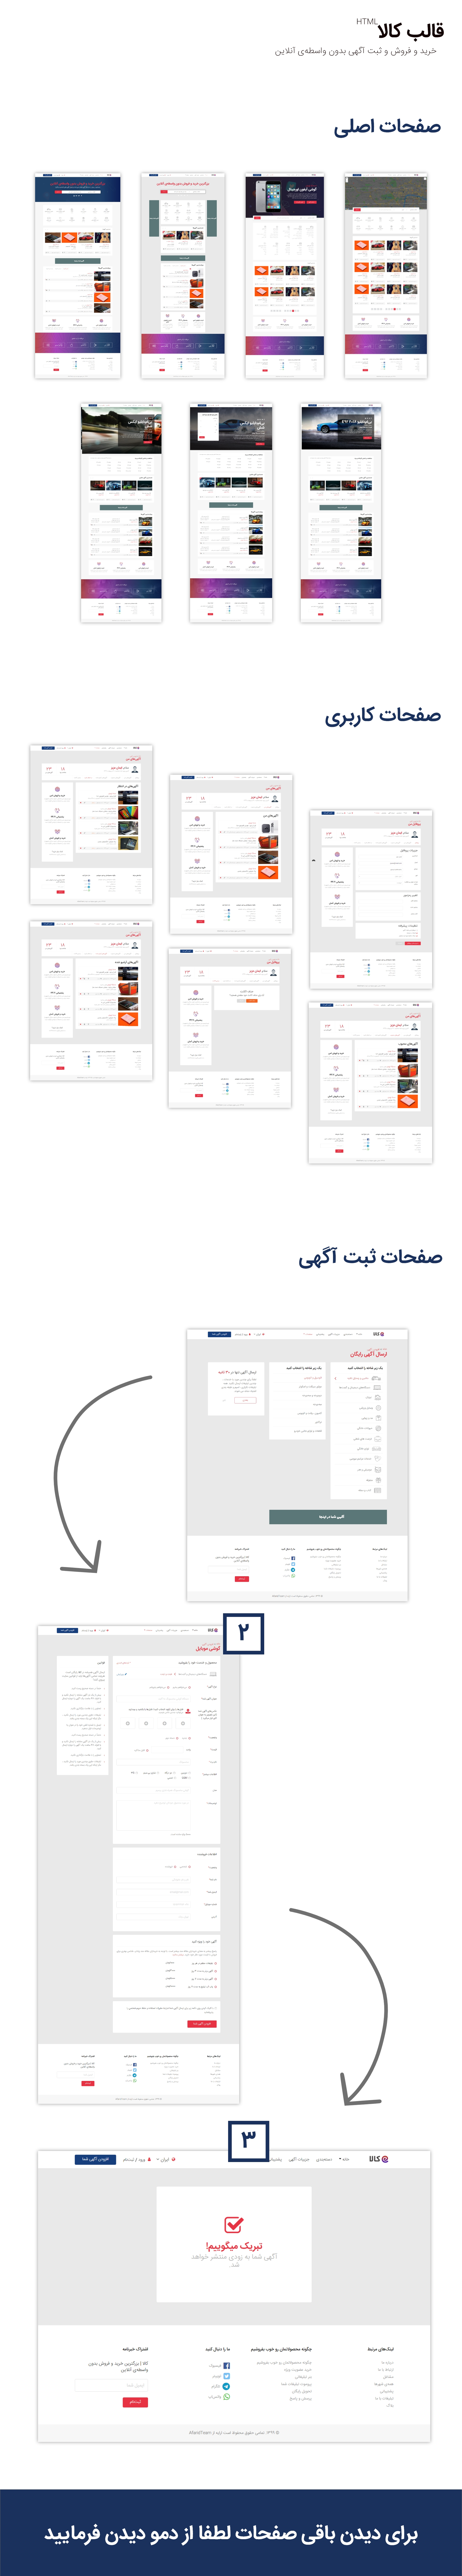 قالب Kala، قالب HTML ثبت آگهی و خرید و فروش آنلاین کالا